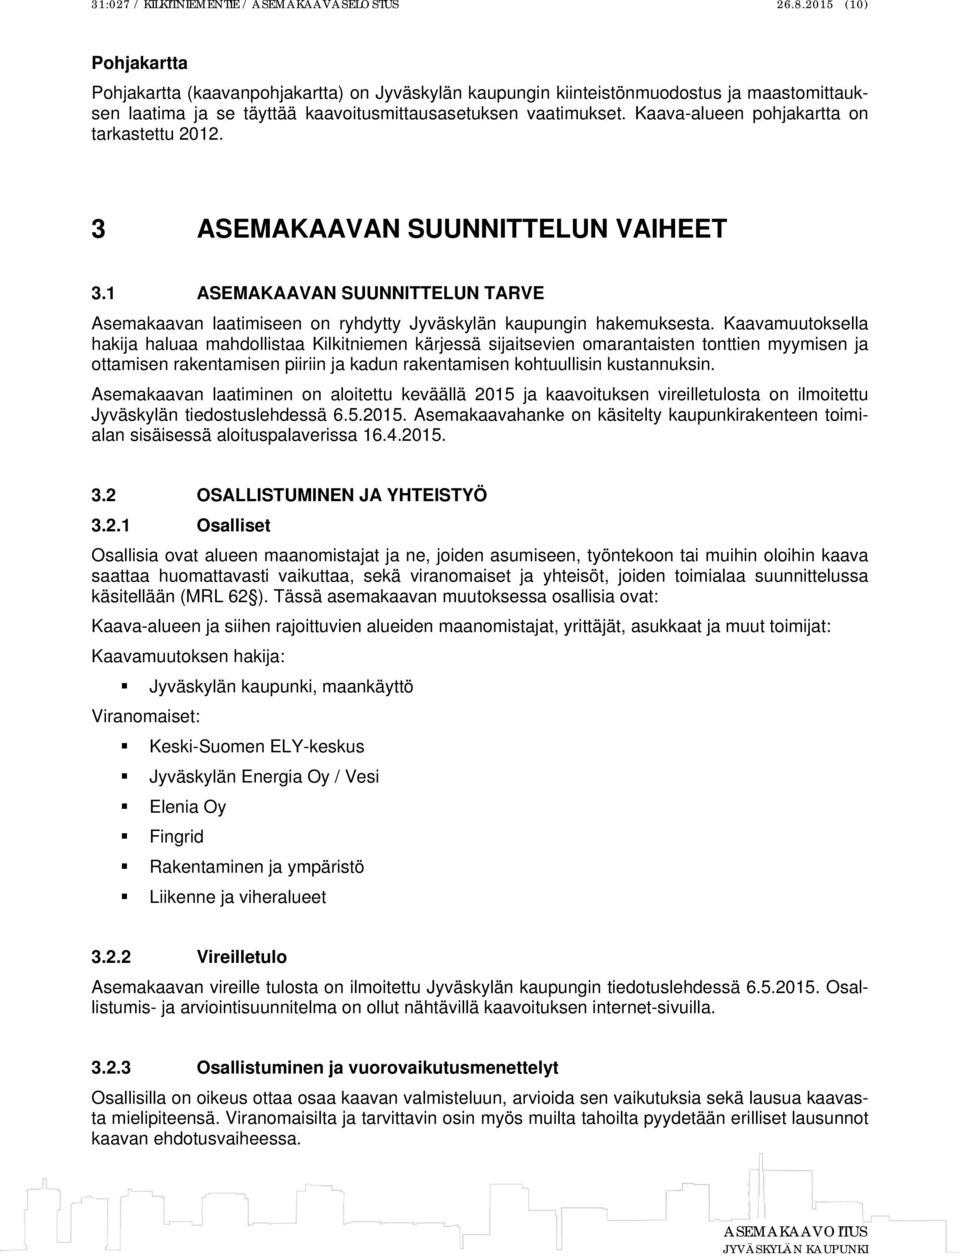 Kaava-alueen pohjakartta on tarkastettu 2012. 3 ASEMAKAAVAN SUUNNITTELUN VAIHEET 3.1 ASEMAKAAVAN SUUNNITTELUN TARVE Asemakaavan laatimiseen on ryhdytty Jyväskylän kaupungin hakemuksesta.